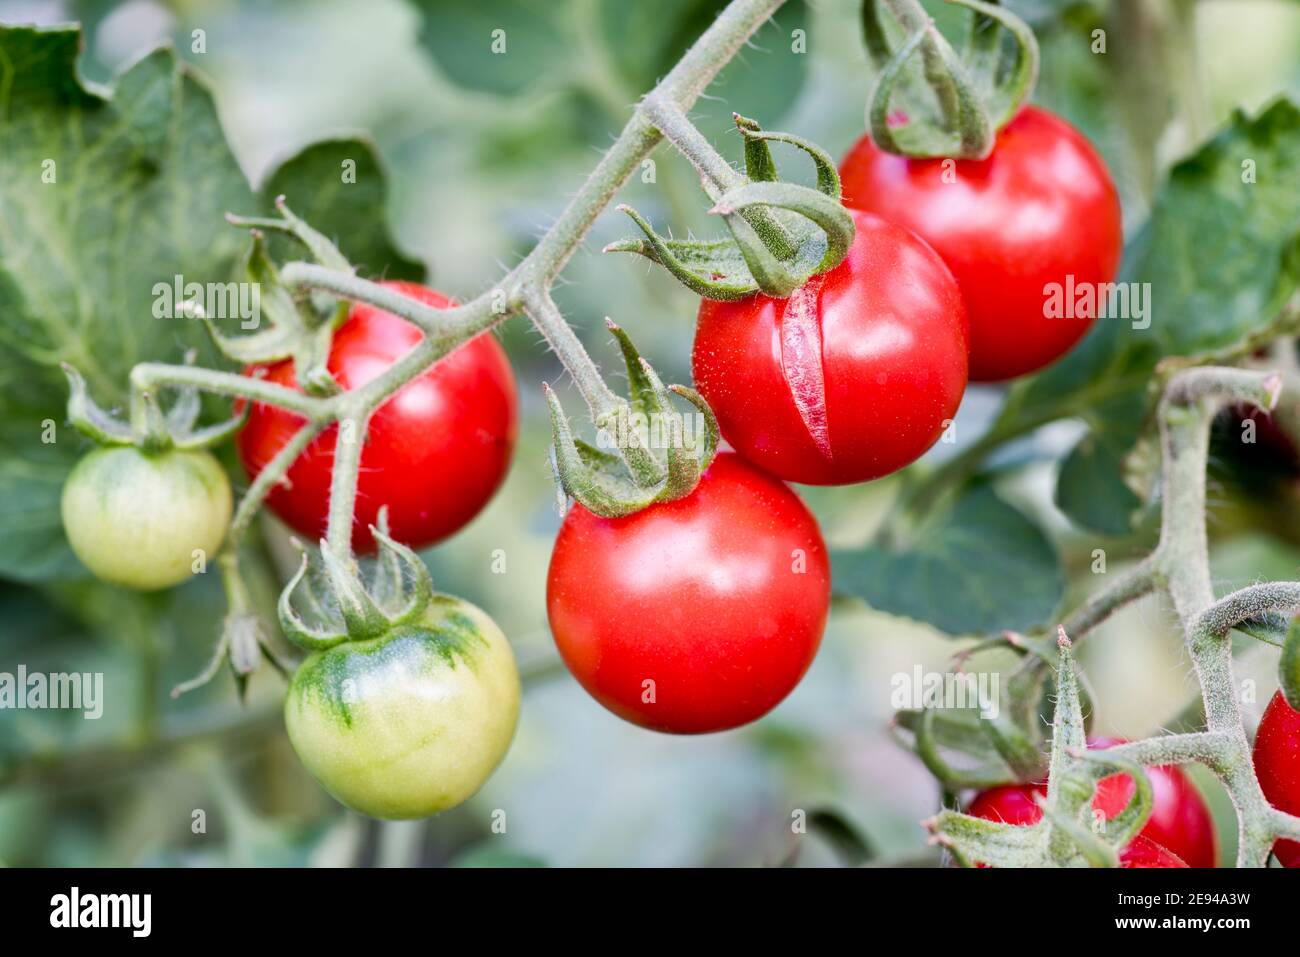 Séparation de la tomate causée par un arrosage irrégulier Banque D'Images